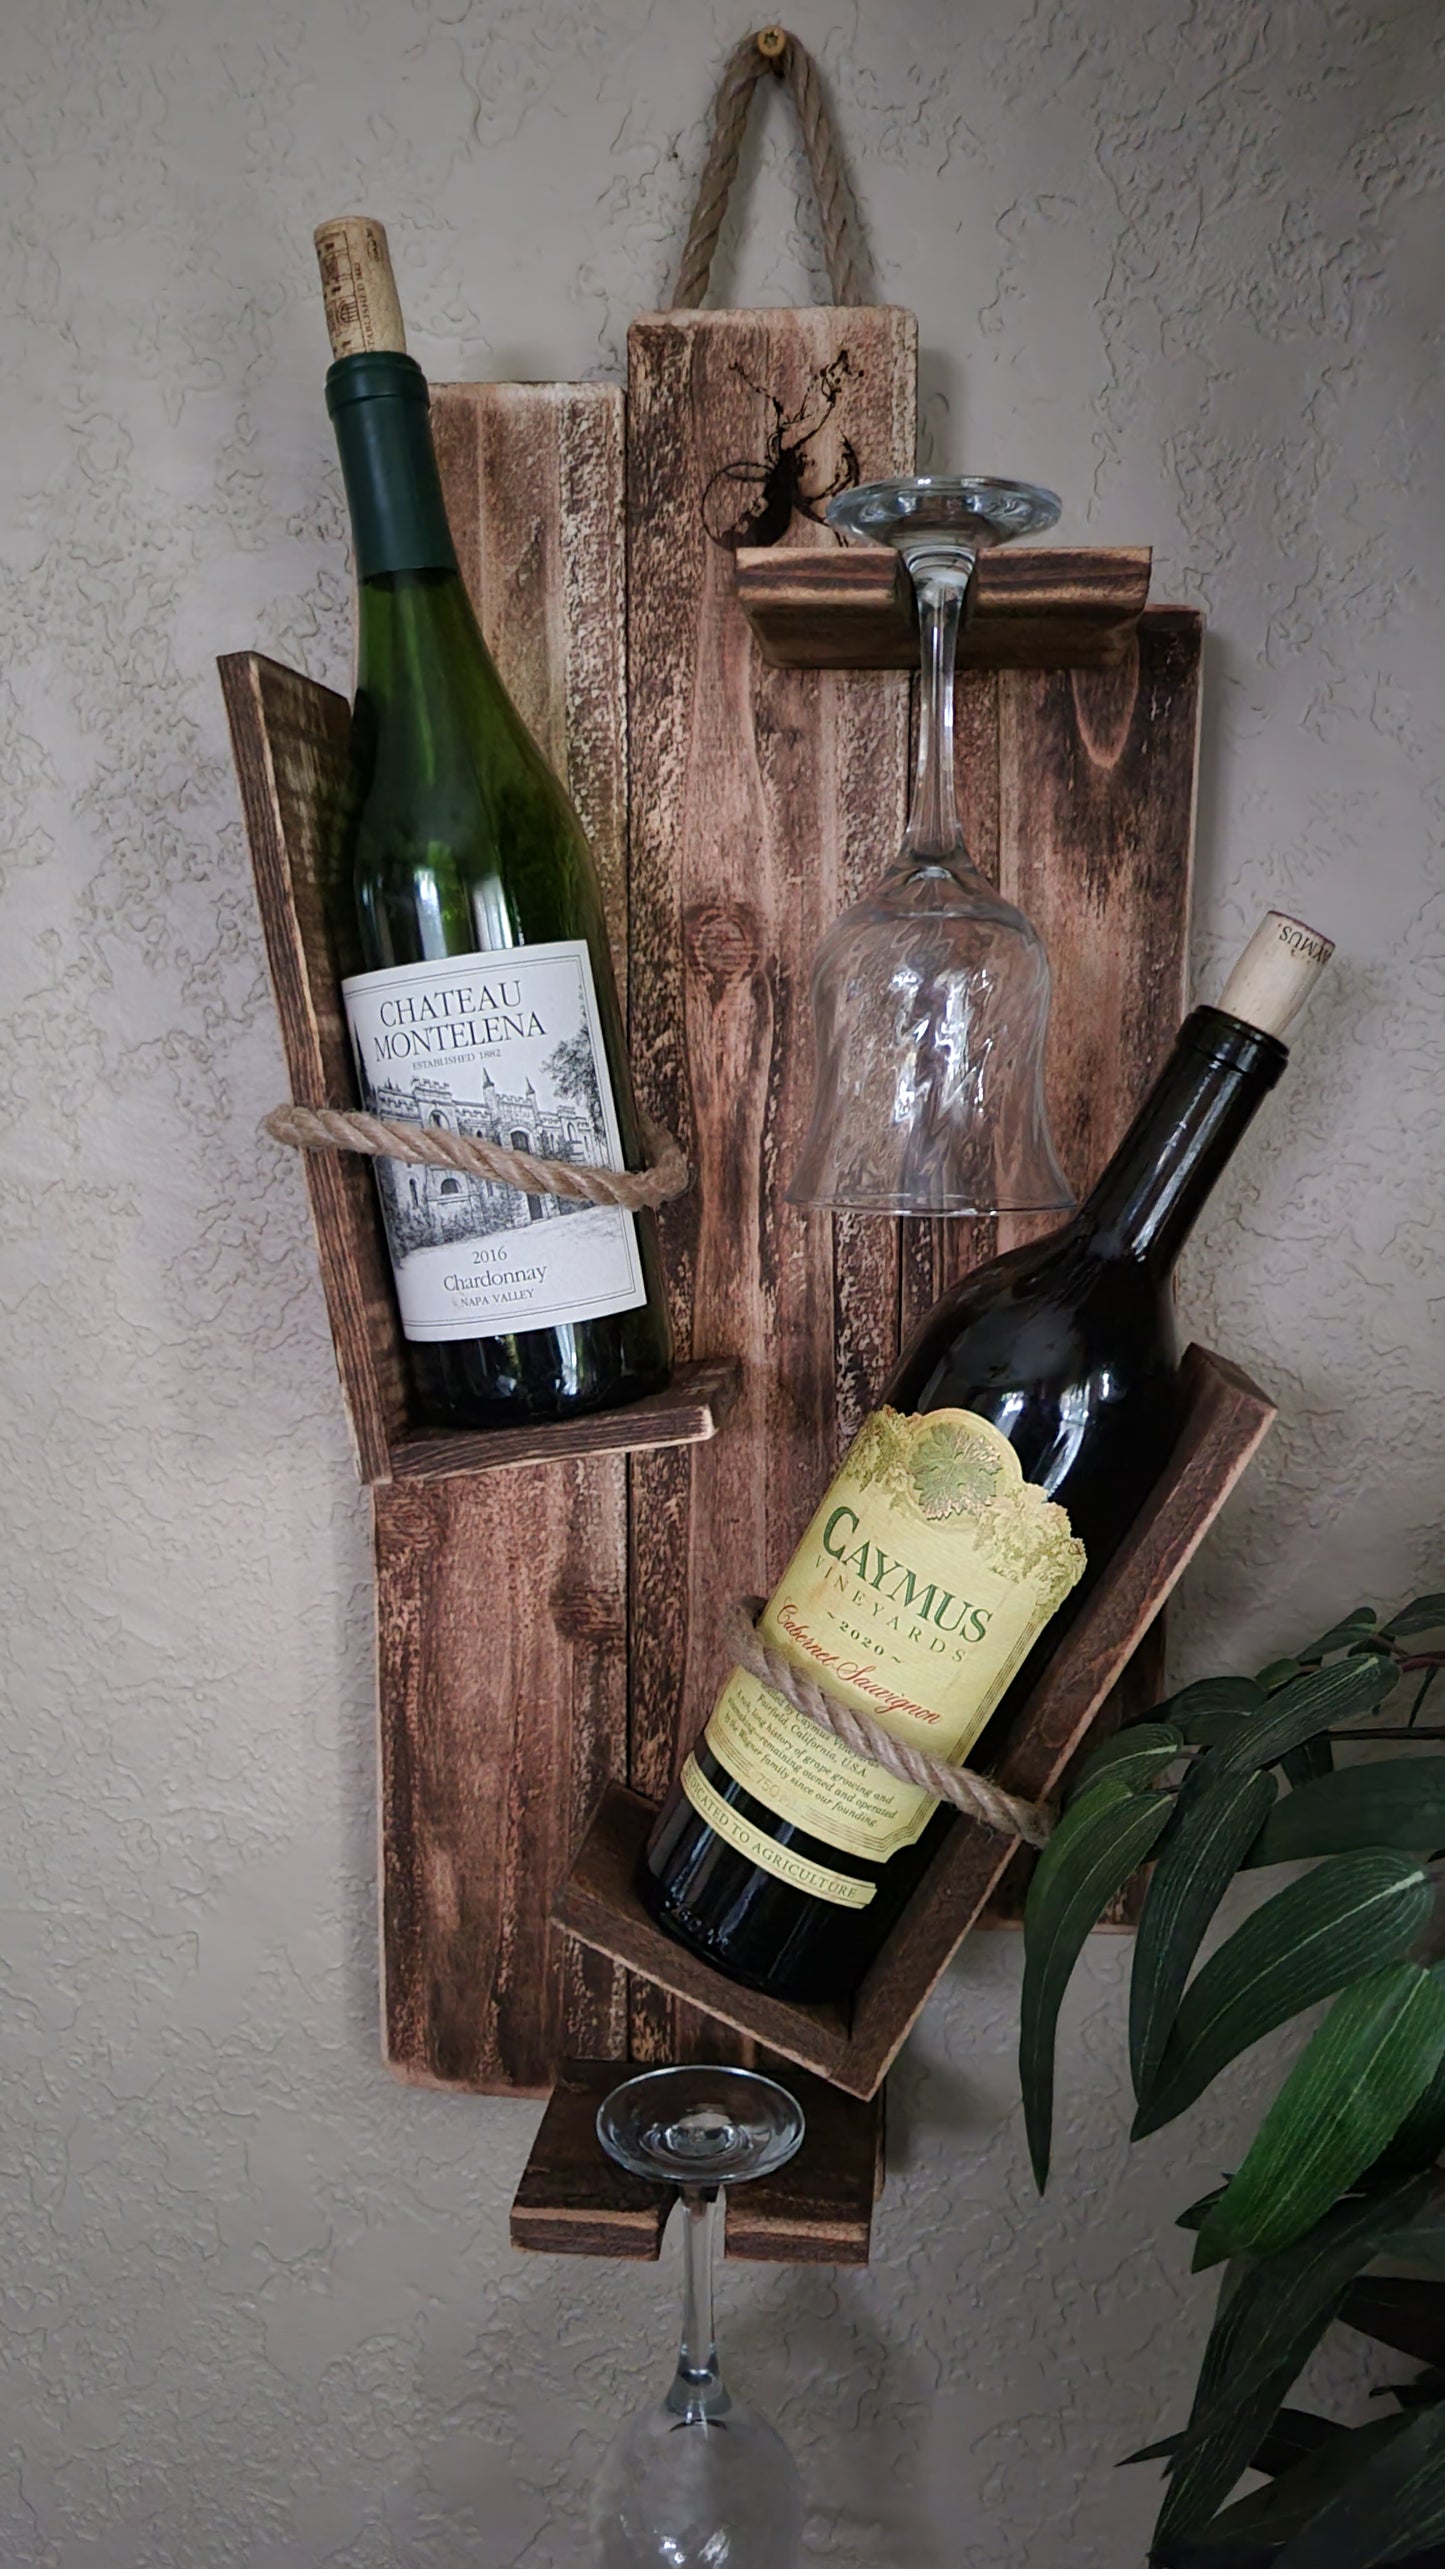 Vintage Wine Rack